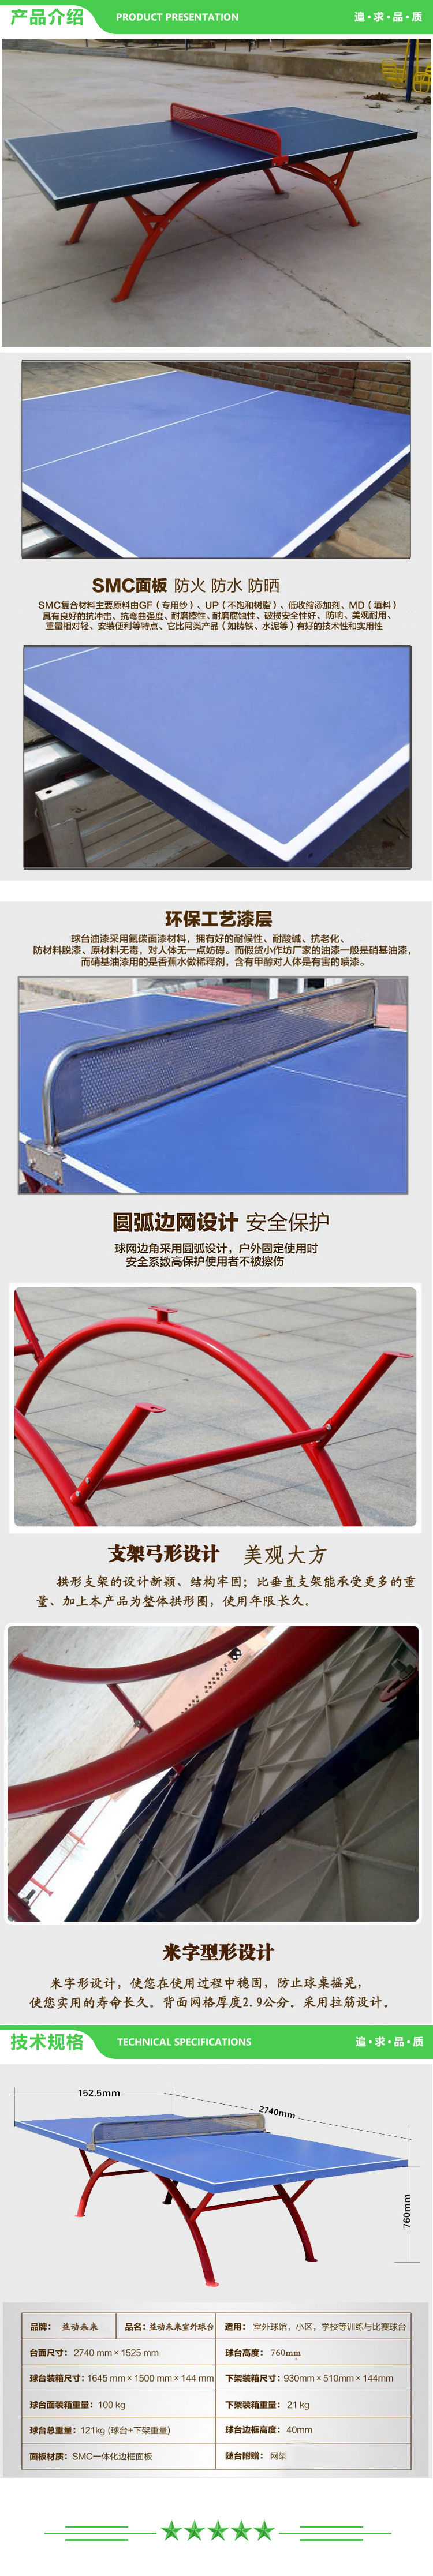 益动未来 标准彩虹腿 室外乒乓球台 防水 防晒 2.jpg